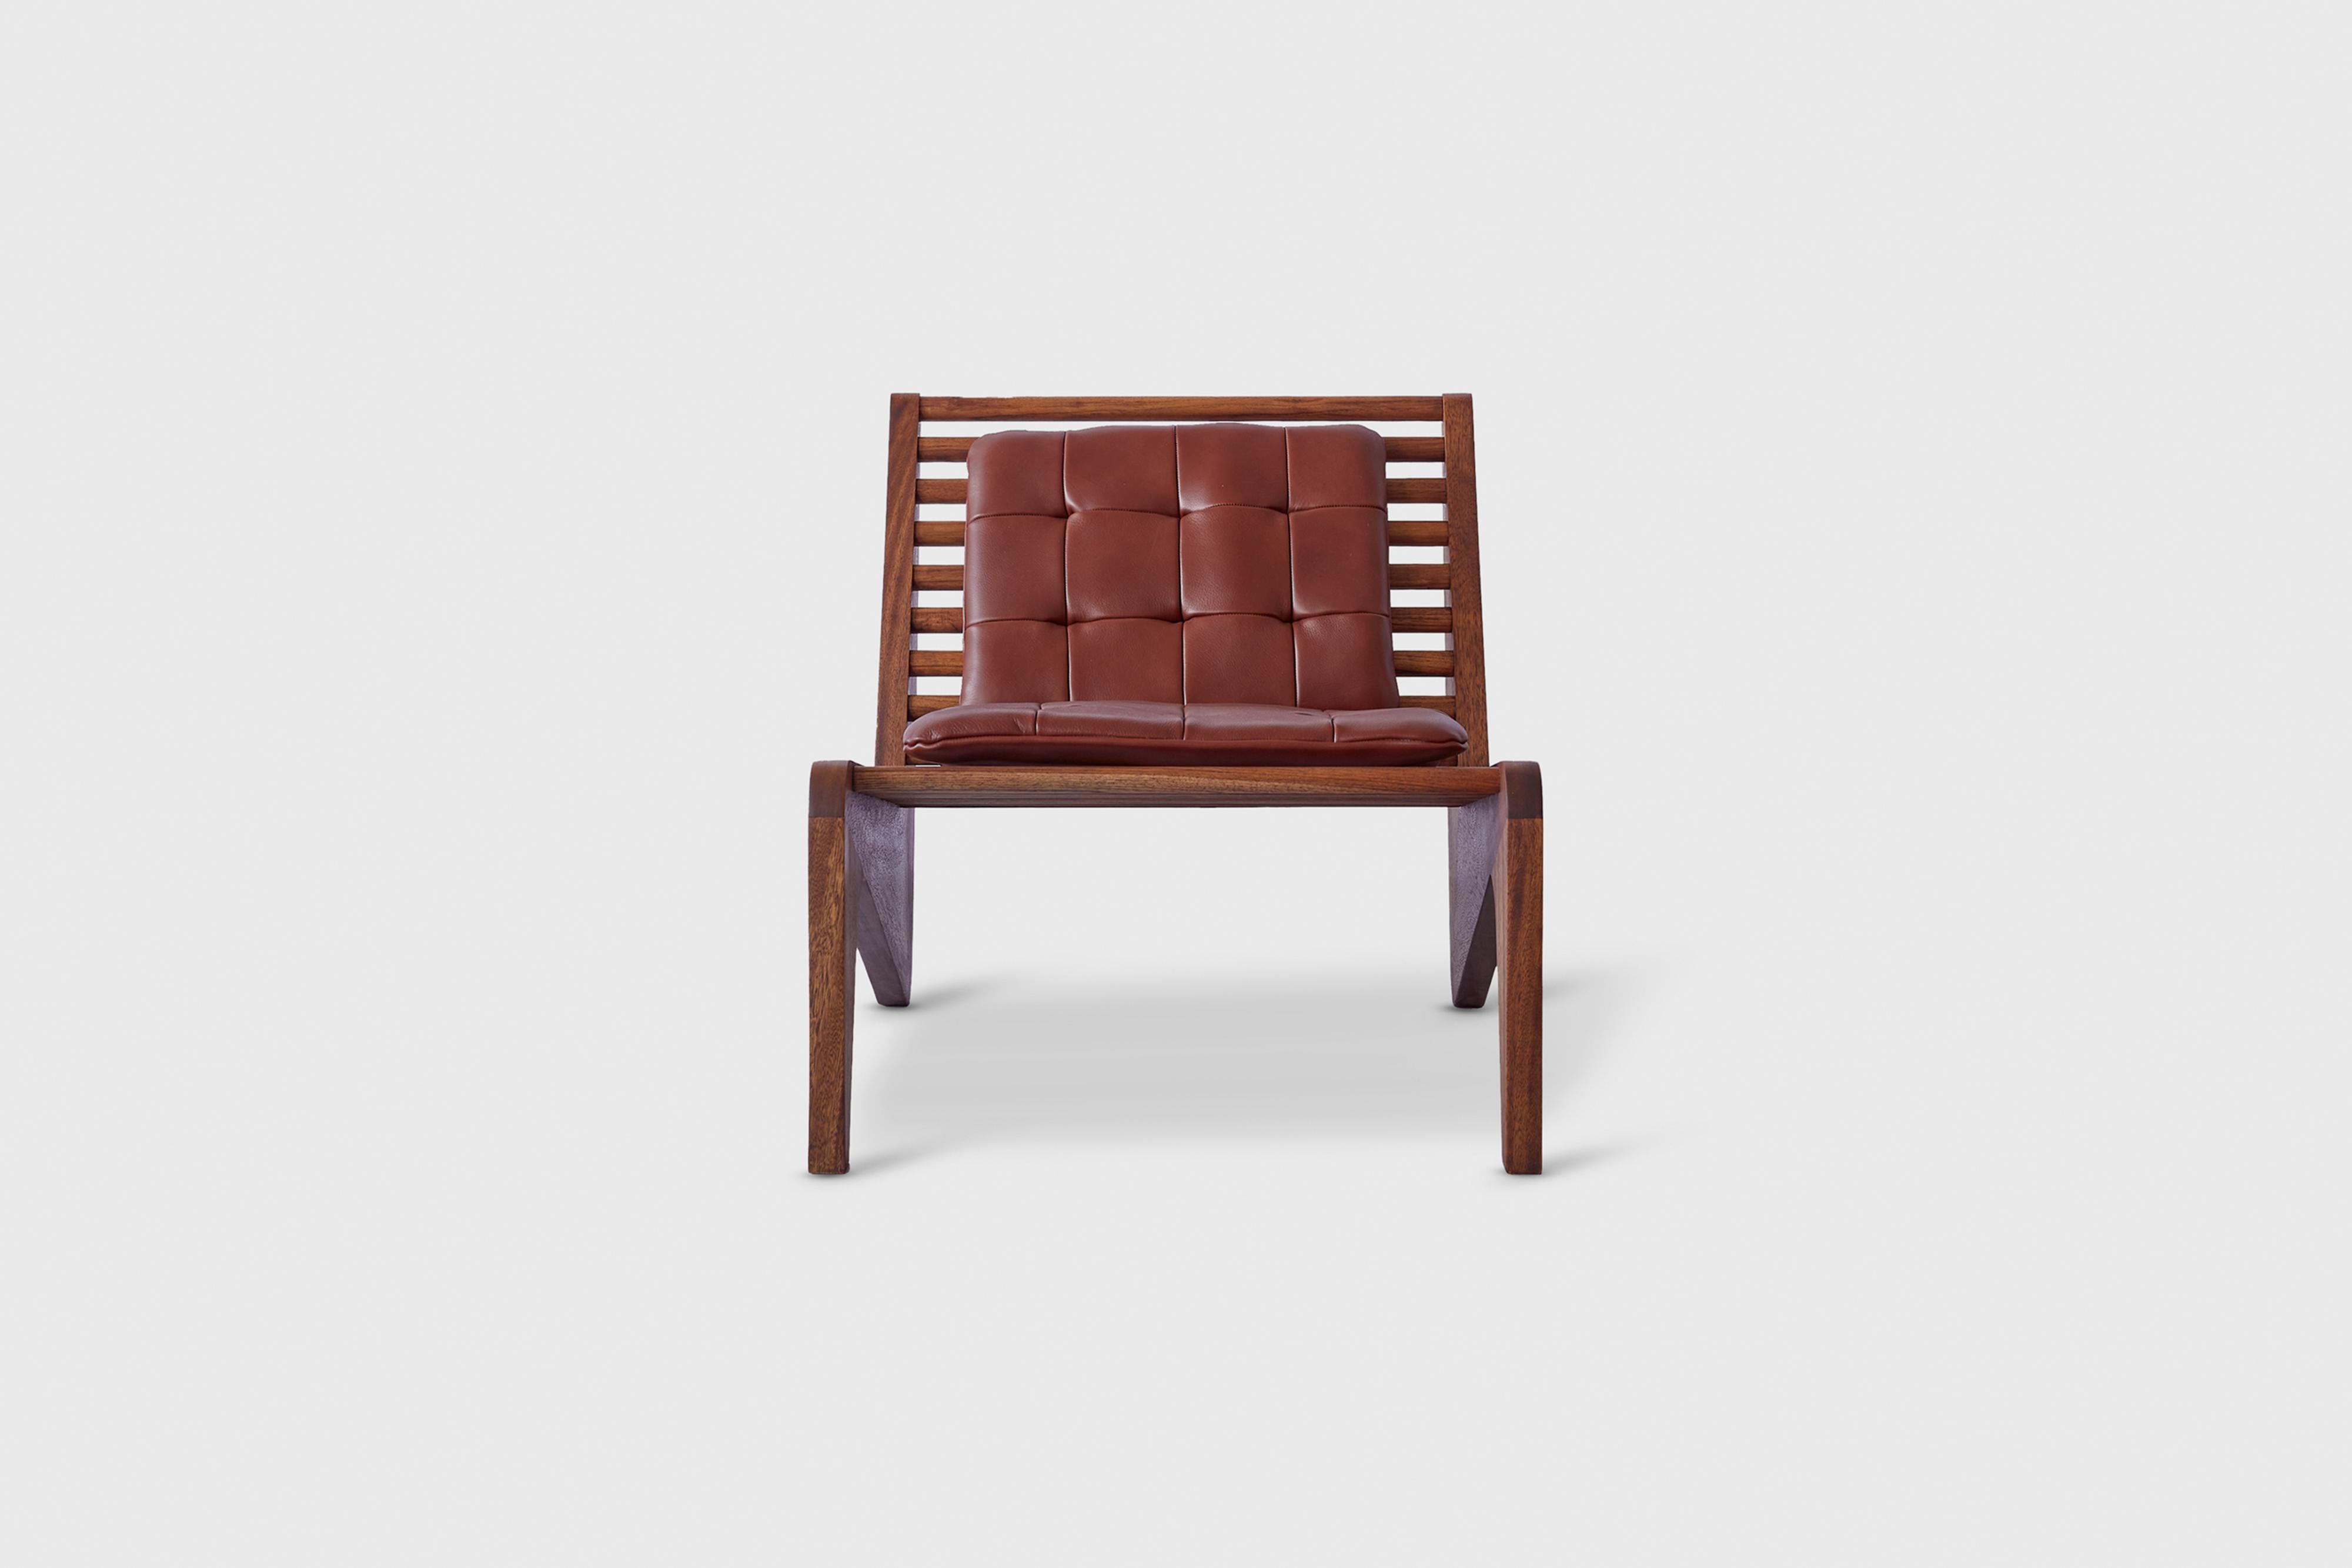 Chaise longue brune Ala par Atra Design
Dimensions : P 50 x L 46,9 x H 76,9 cm
Matériaux : pad en cuir, acajou.
Disponible en acajou ou en teck. Disponible dans d'autres couleurs.

Atra Design
Nous sommes Atra, une marque de meubles produite